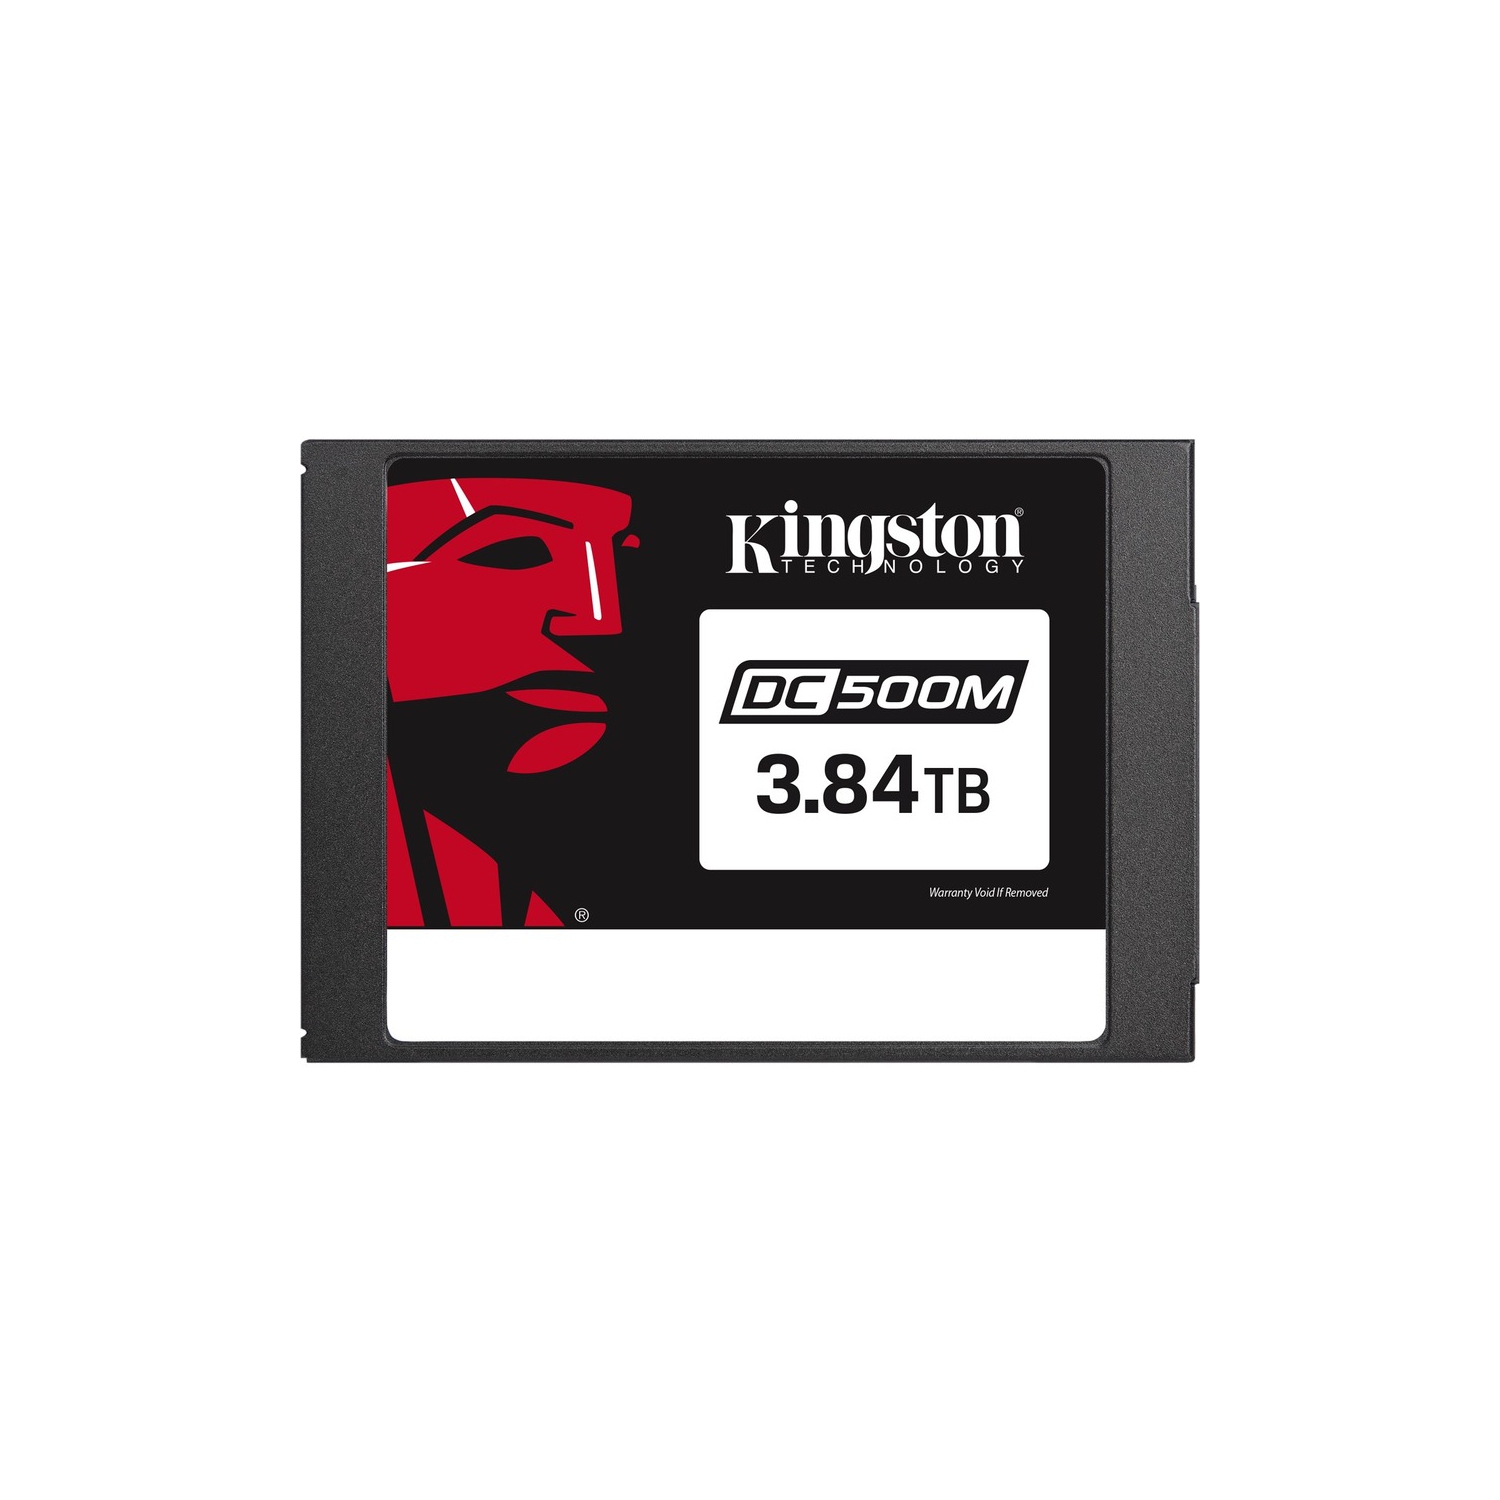 KINGSTON 3840G DC500M 2.5 ENT SATA SSD (SEDC500M/3840G)